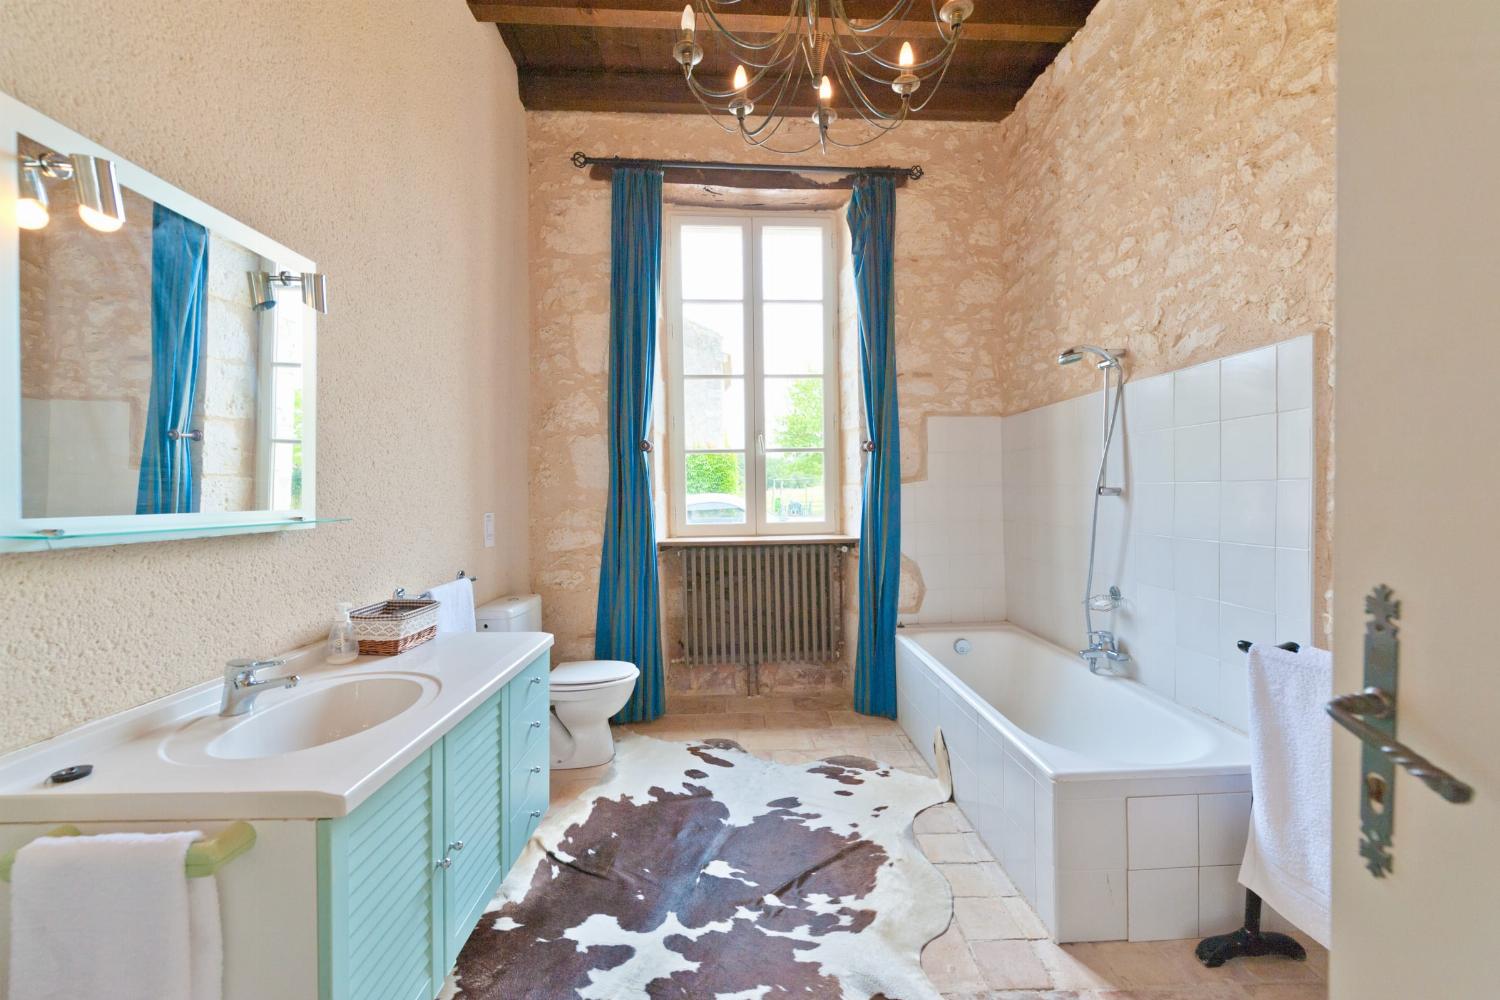 Salle de bain | Location de vacances dans le Gers